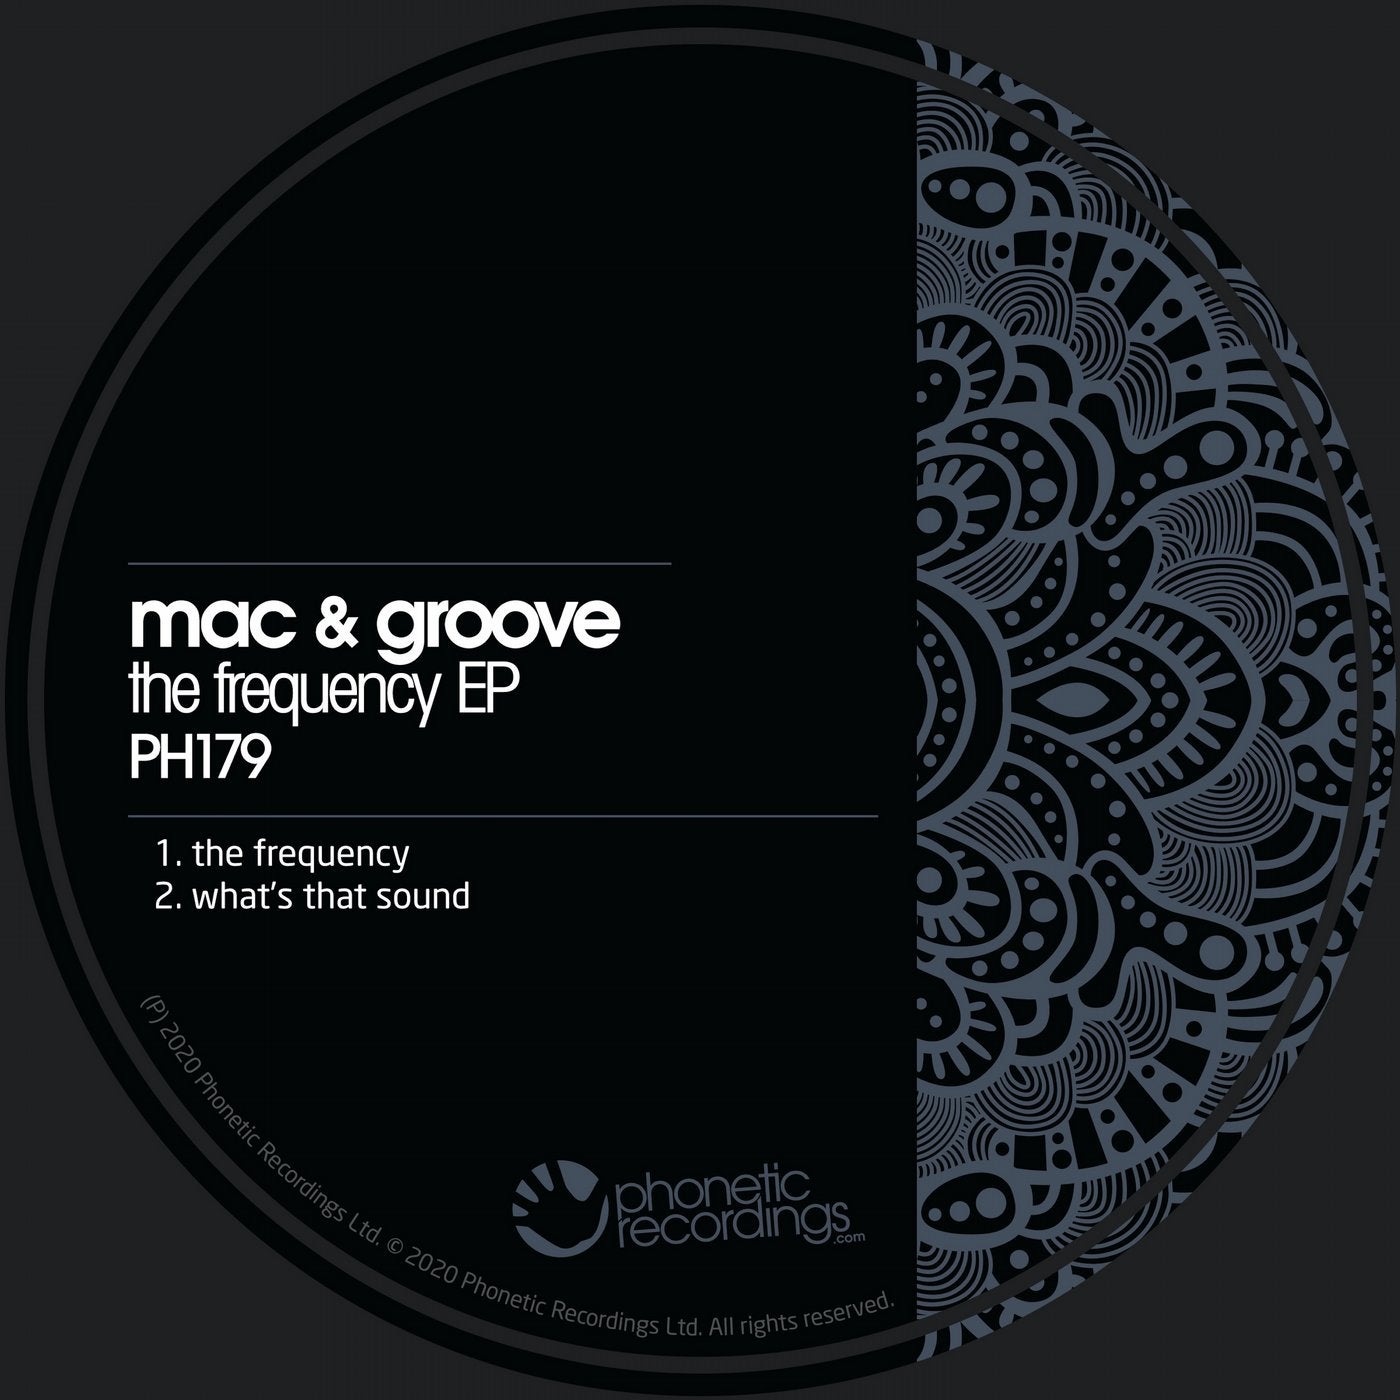 Слушайте The Frequency EP от Mac & Groove на Beatport.